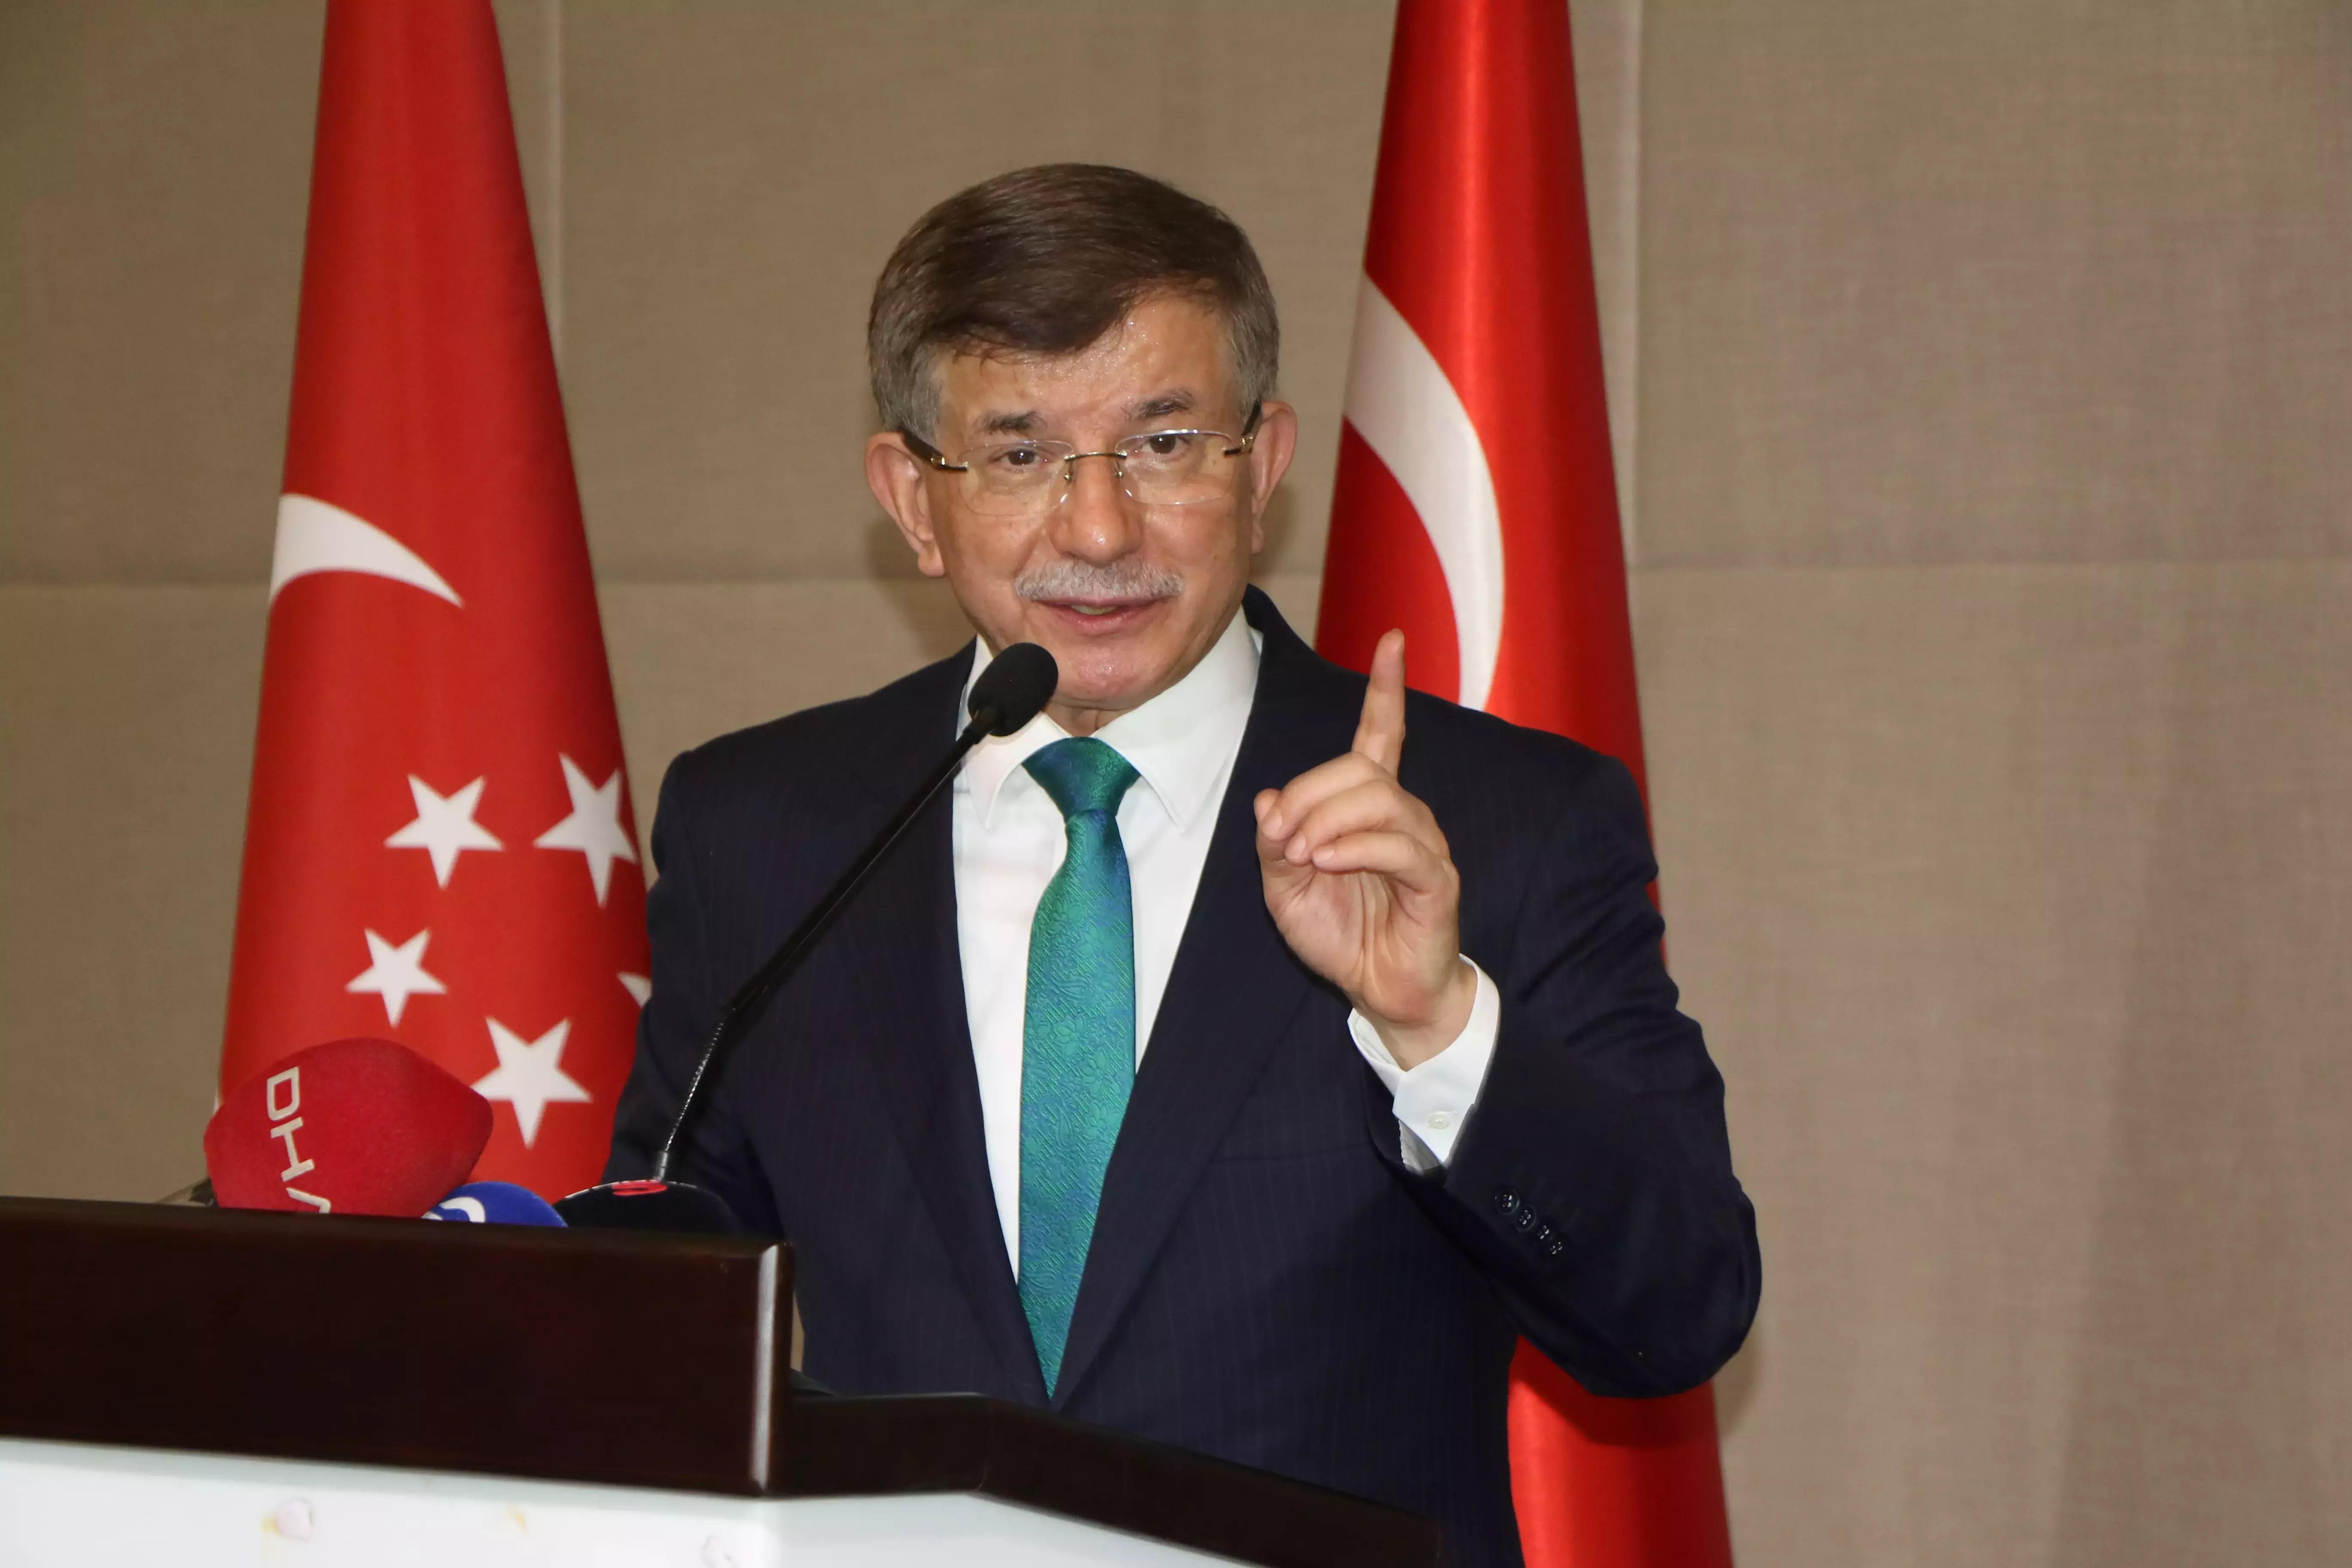 Samsun'da konuşan Ahmet Davutoğlu'ndan, Devlet Bahçeli'ye milli beka göndermesi